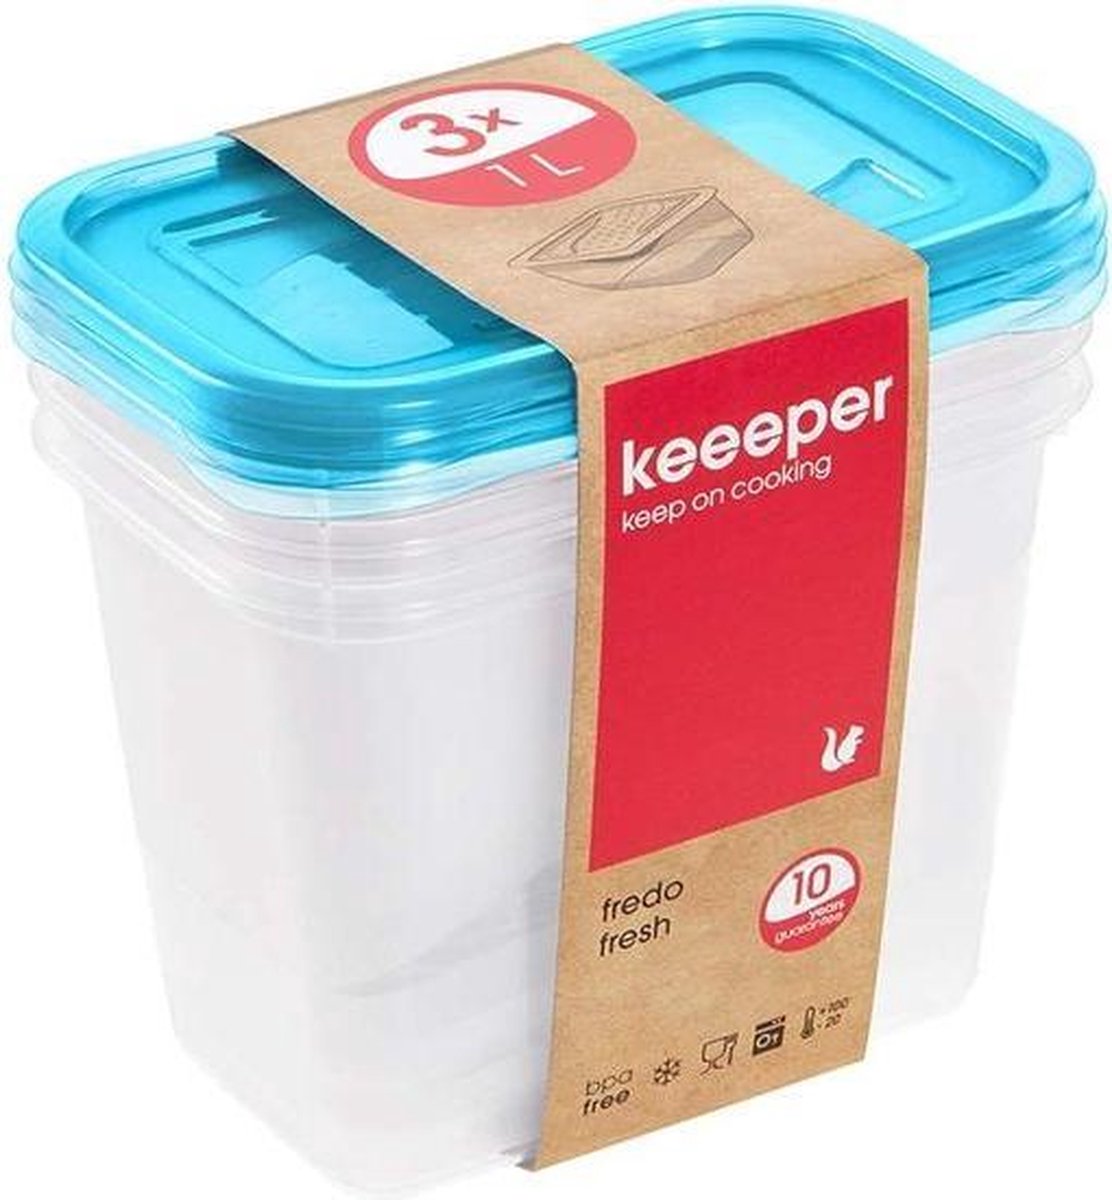 Keeeper Fredo Fresh - Vershouddoos / Vershouddozen - Transparent /blauw - Set van 3st.- 1 L